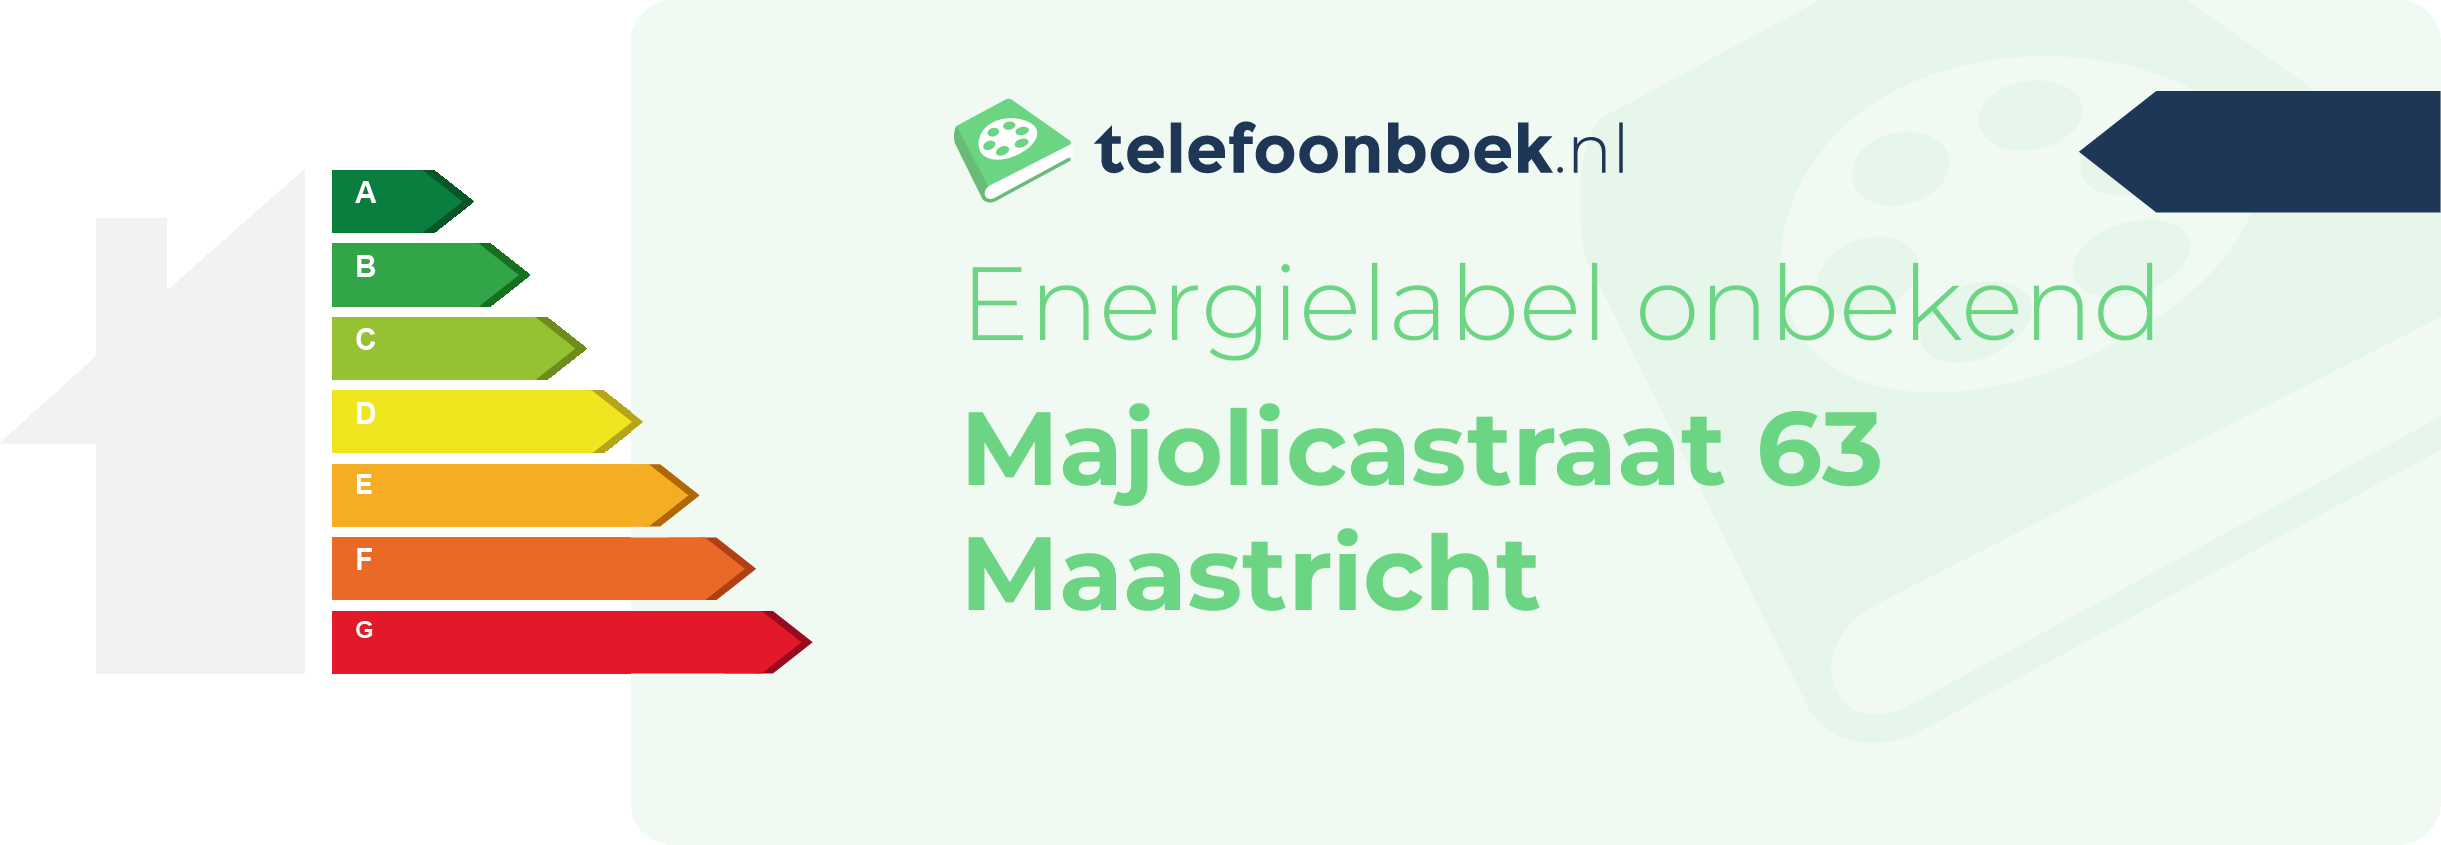 Energielabel Majolicastraat 63 Maastricht